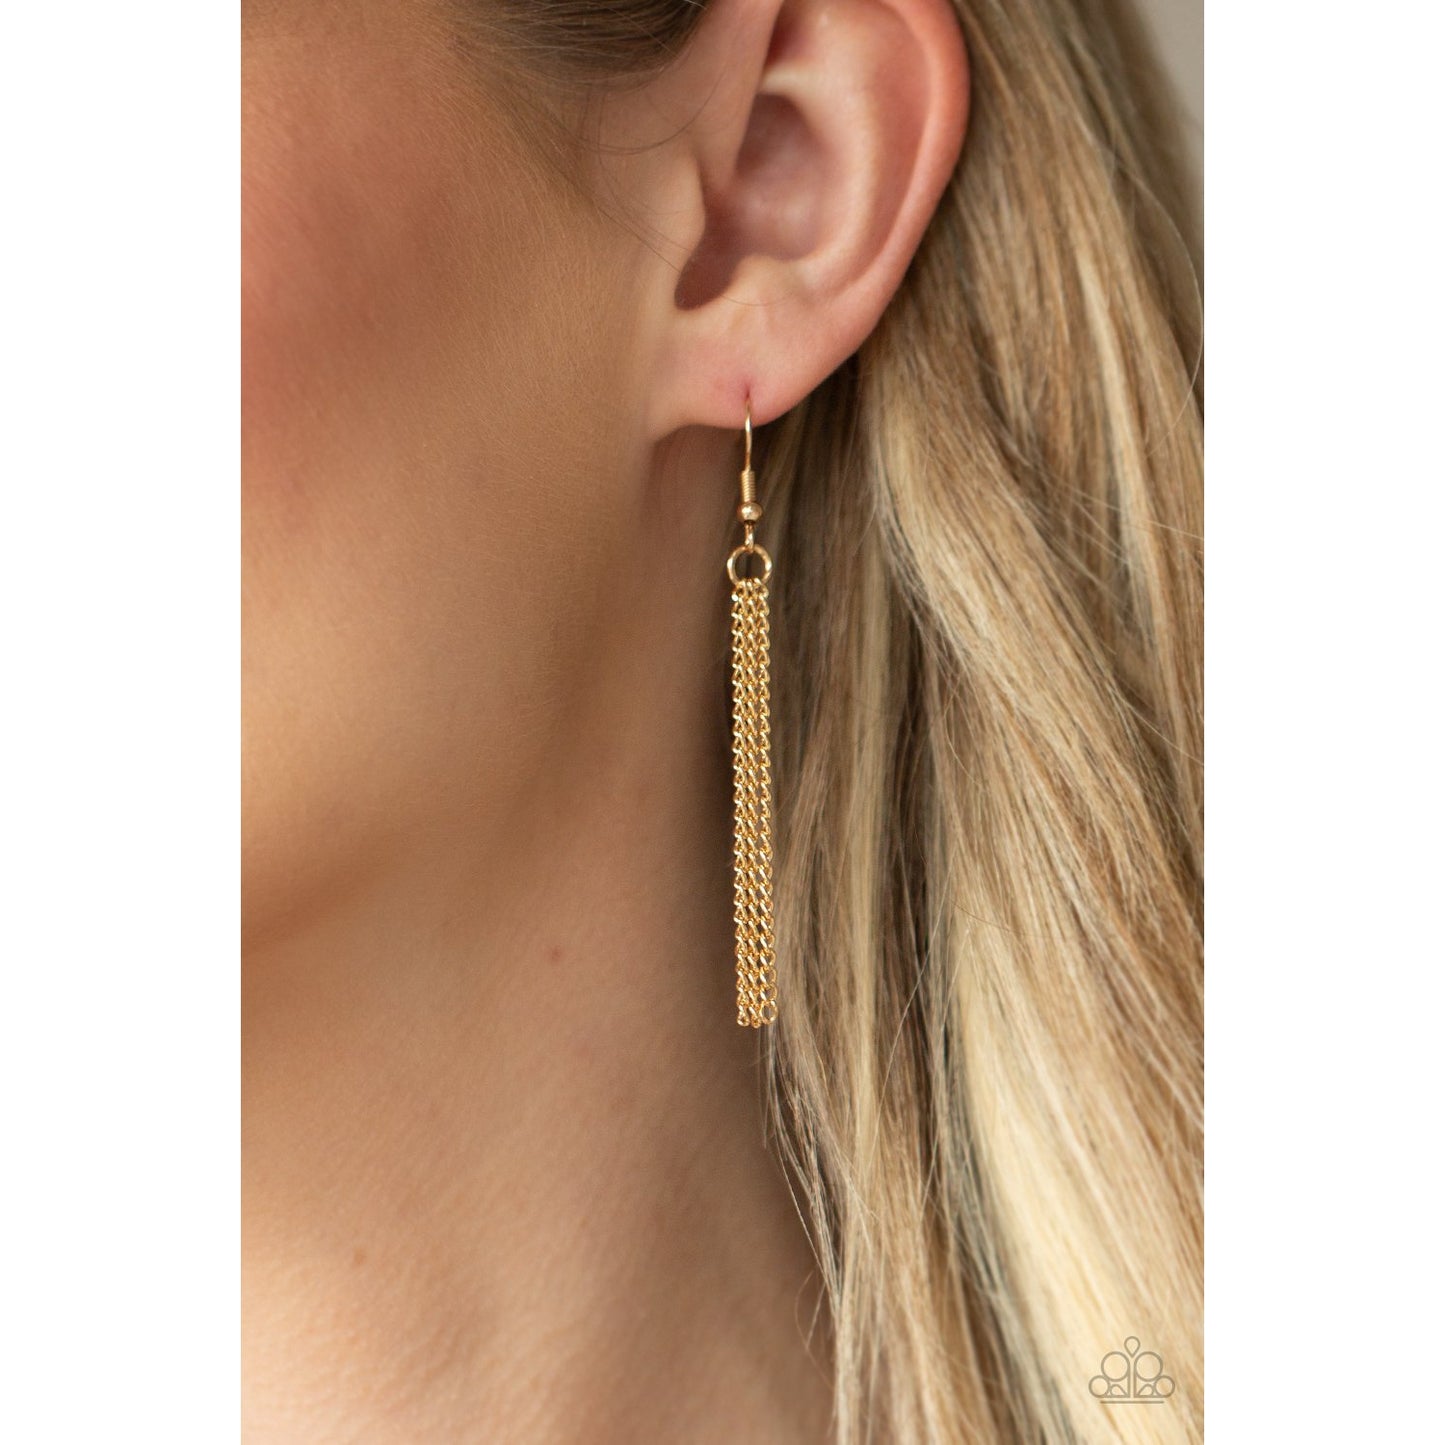 Glamorously Glaring - Gold Rhinestone Necklace - Paparazzi Accessories - GlaMarous Titi Jewels